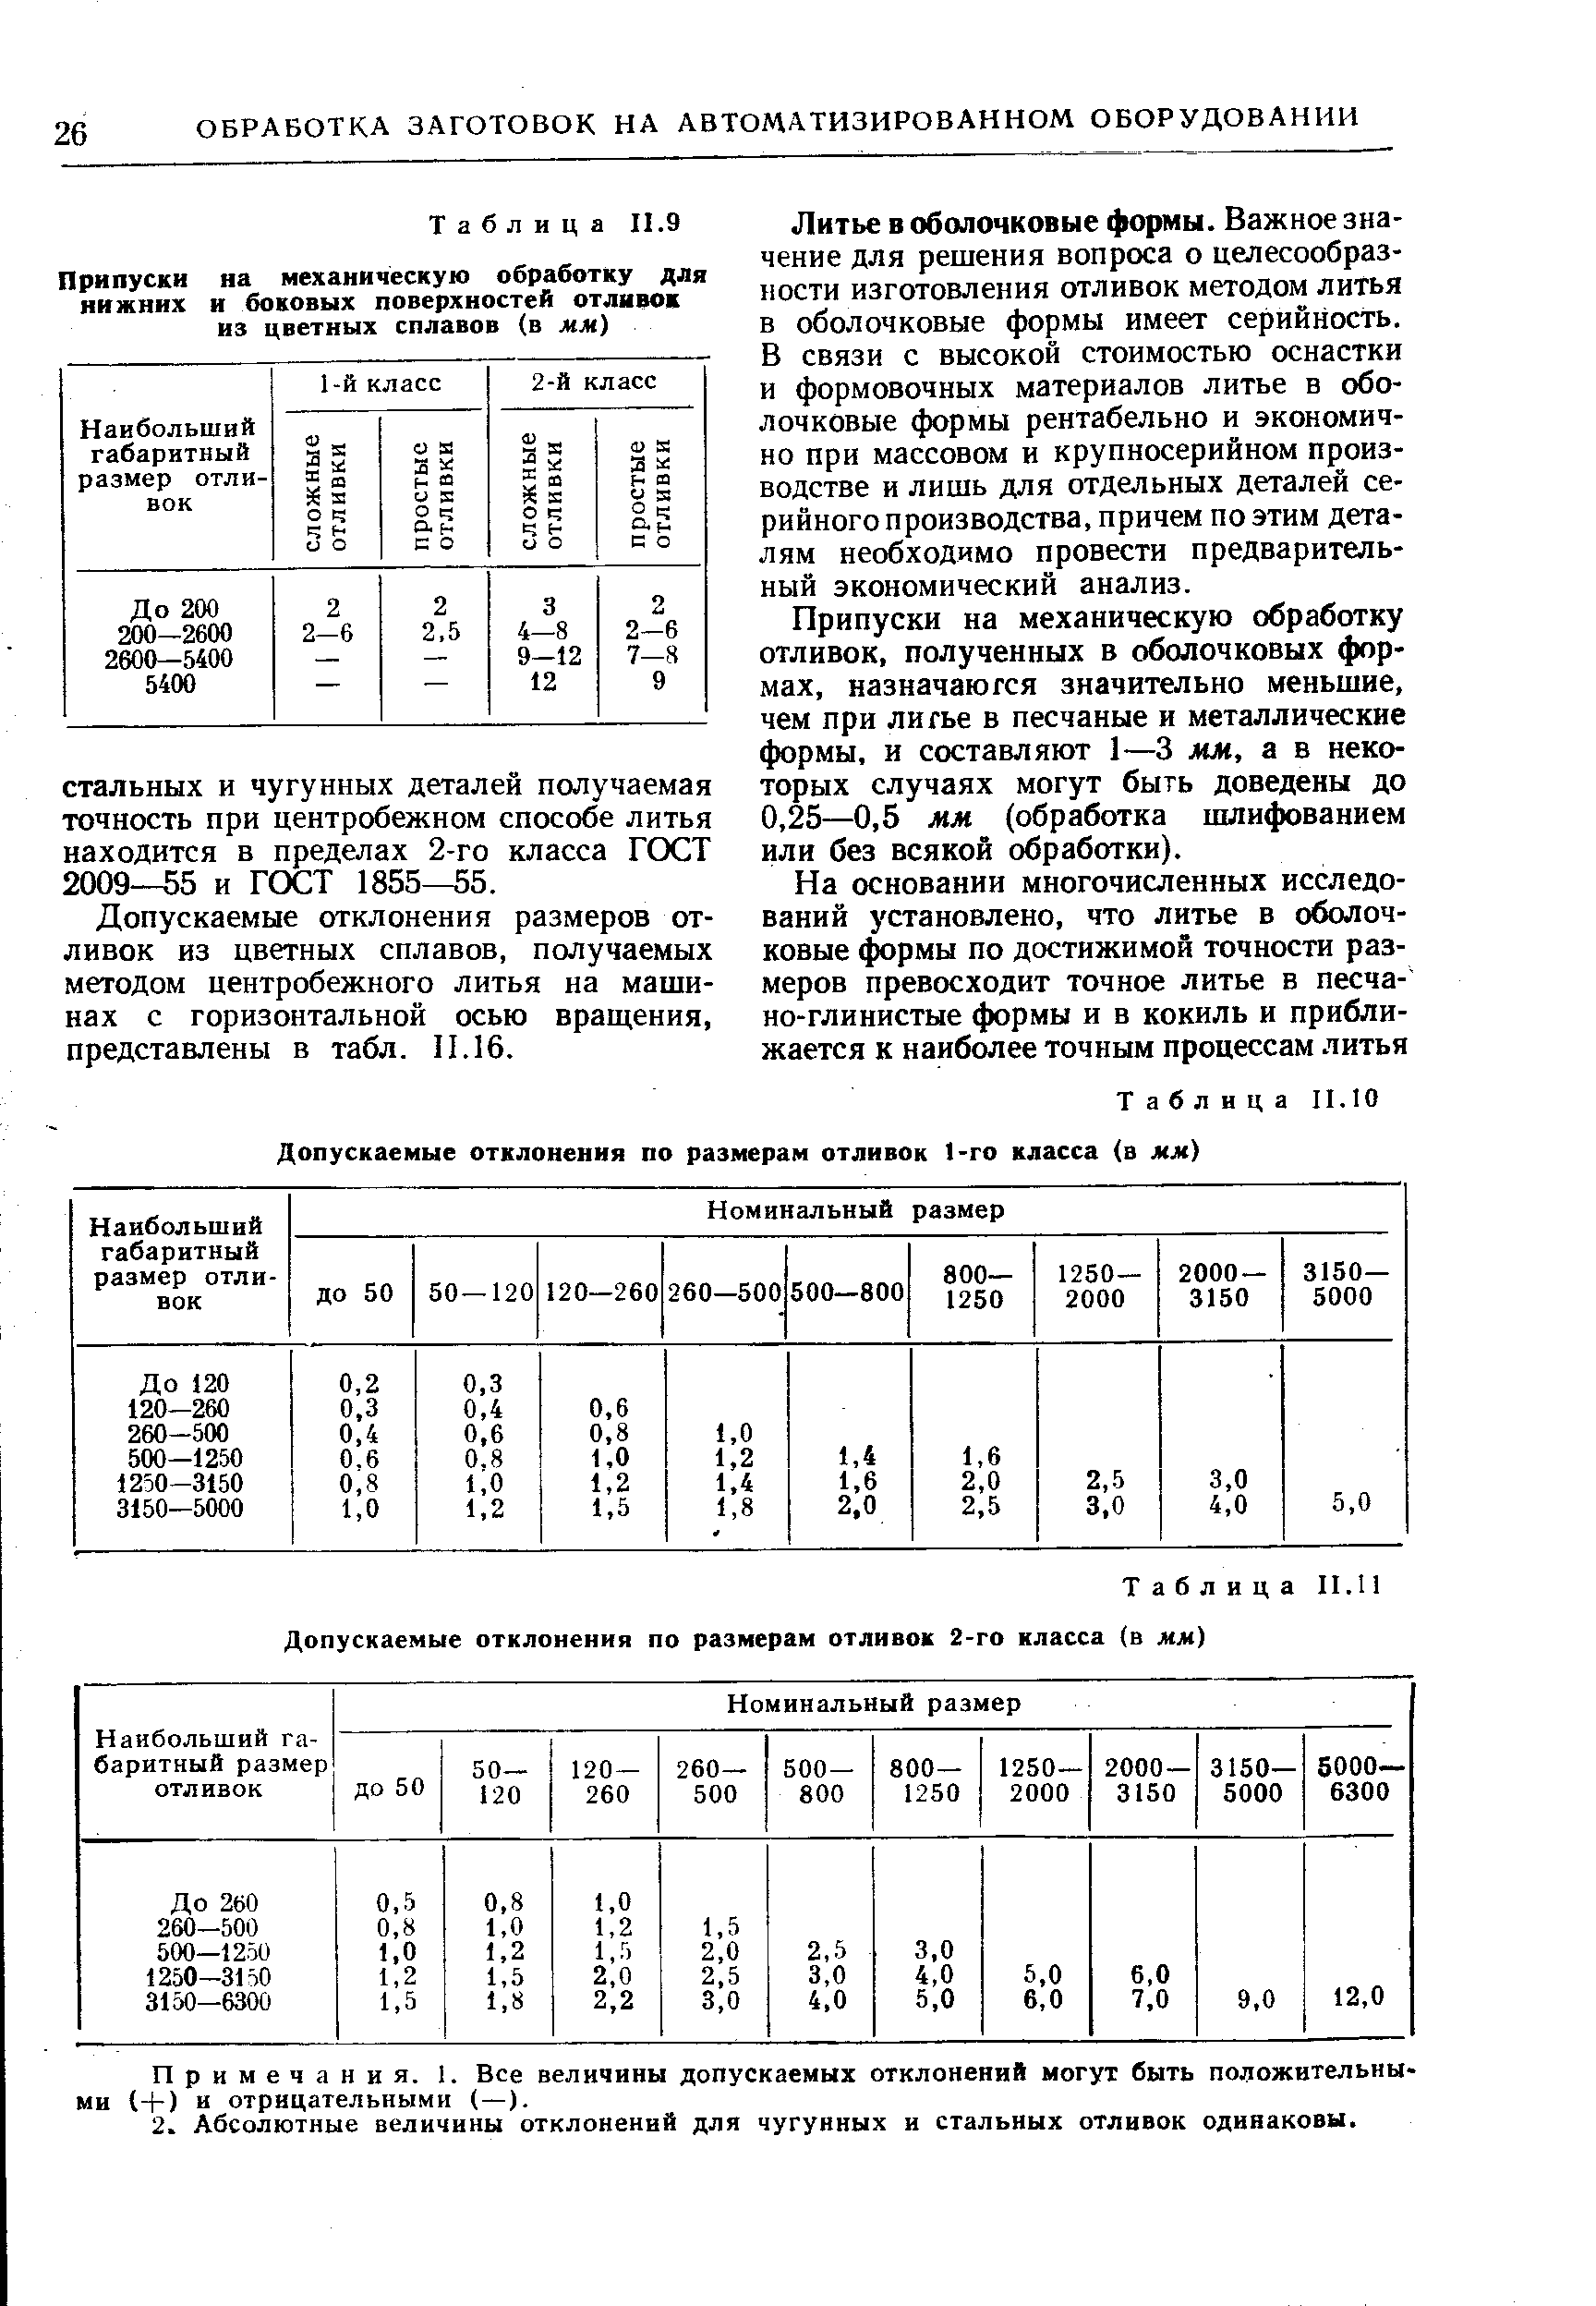 Таблица 11.11 Допускаемые отклонения по размерам отливок 2-го класса (в мм)
